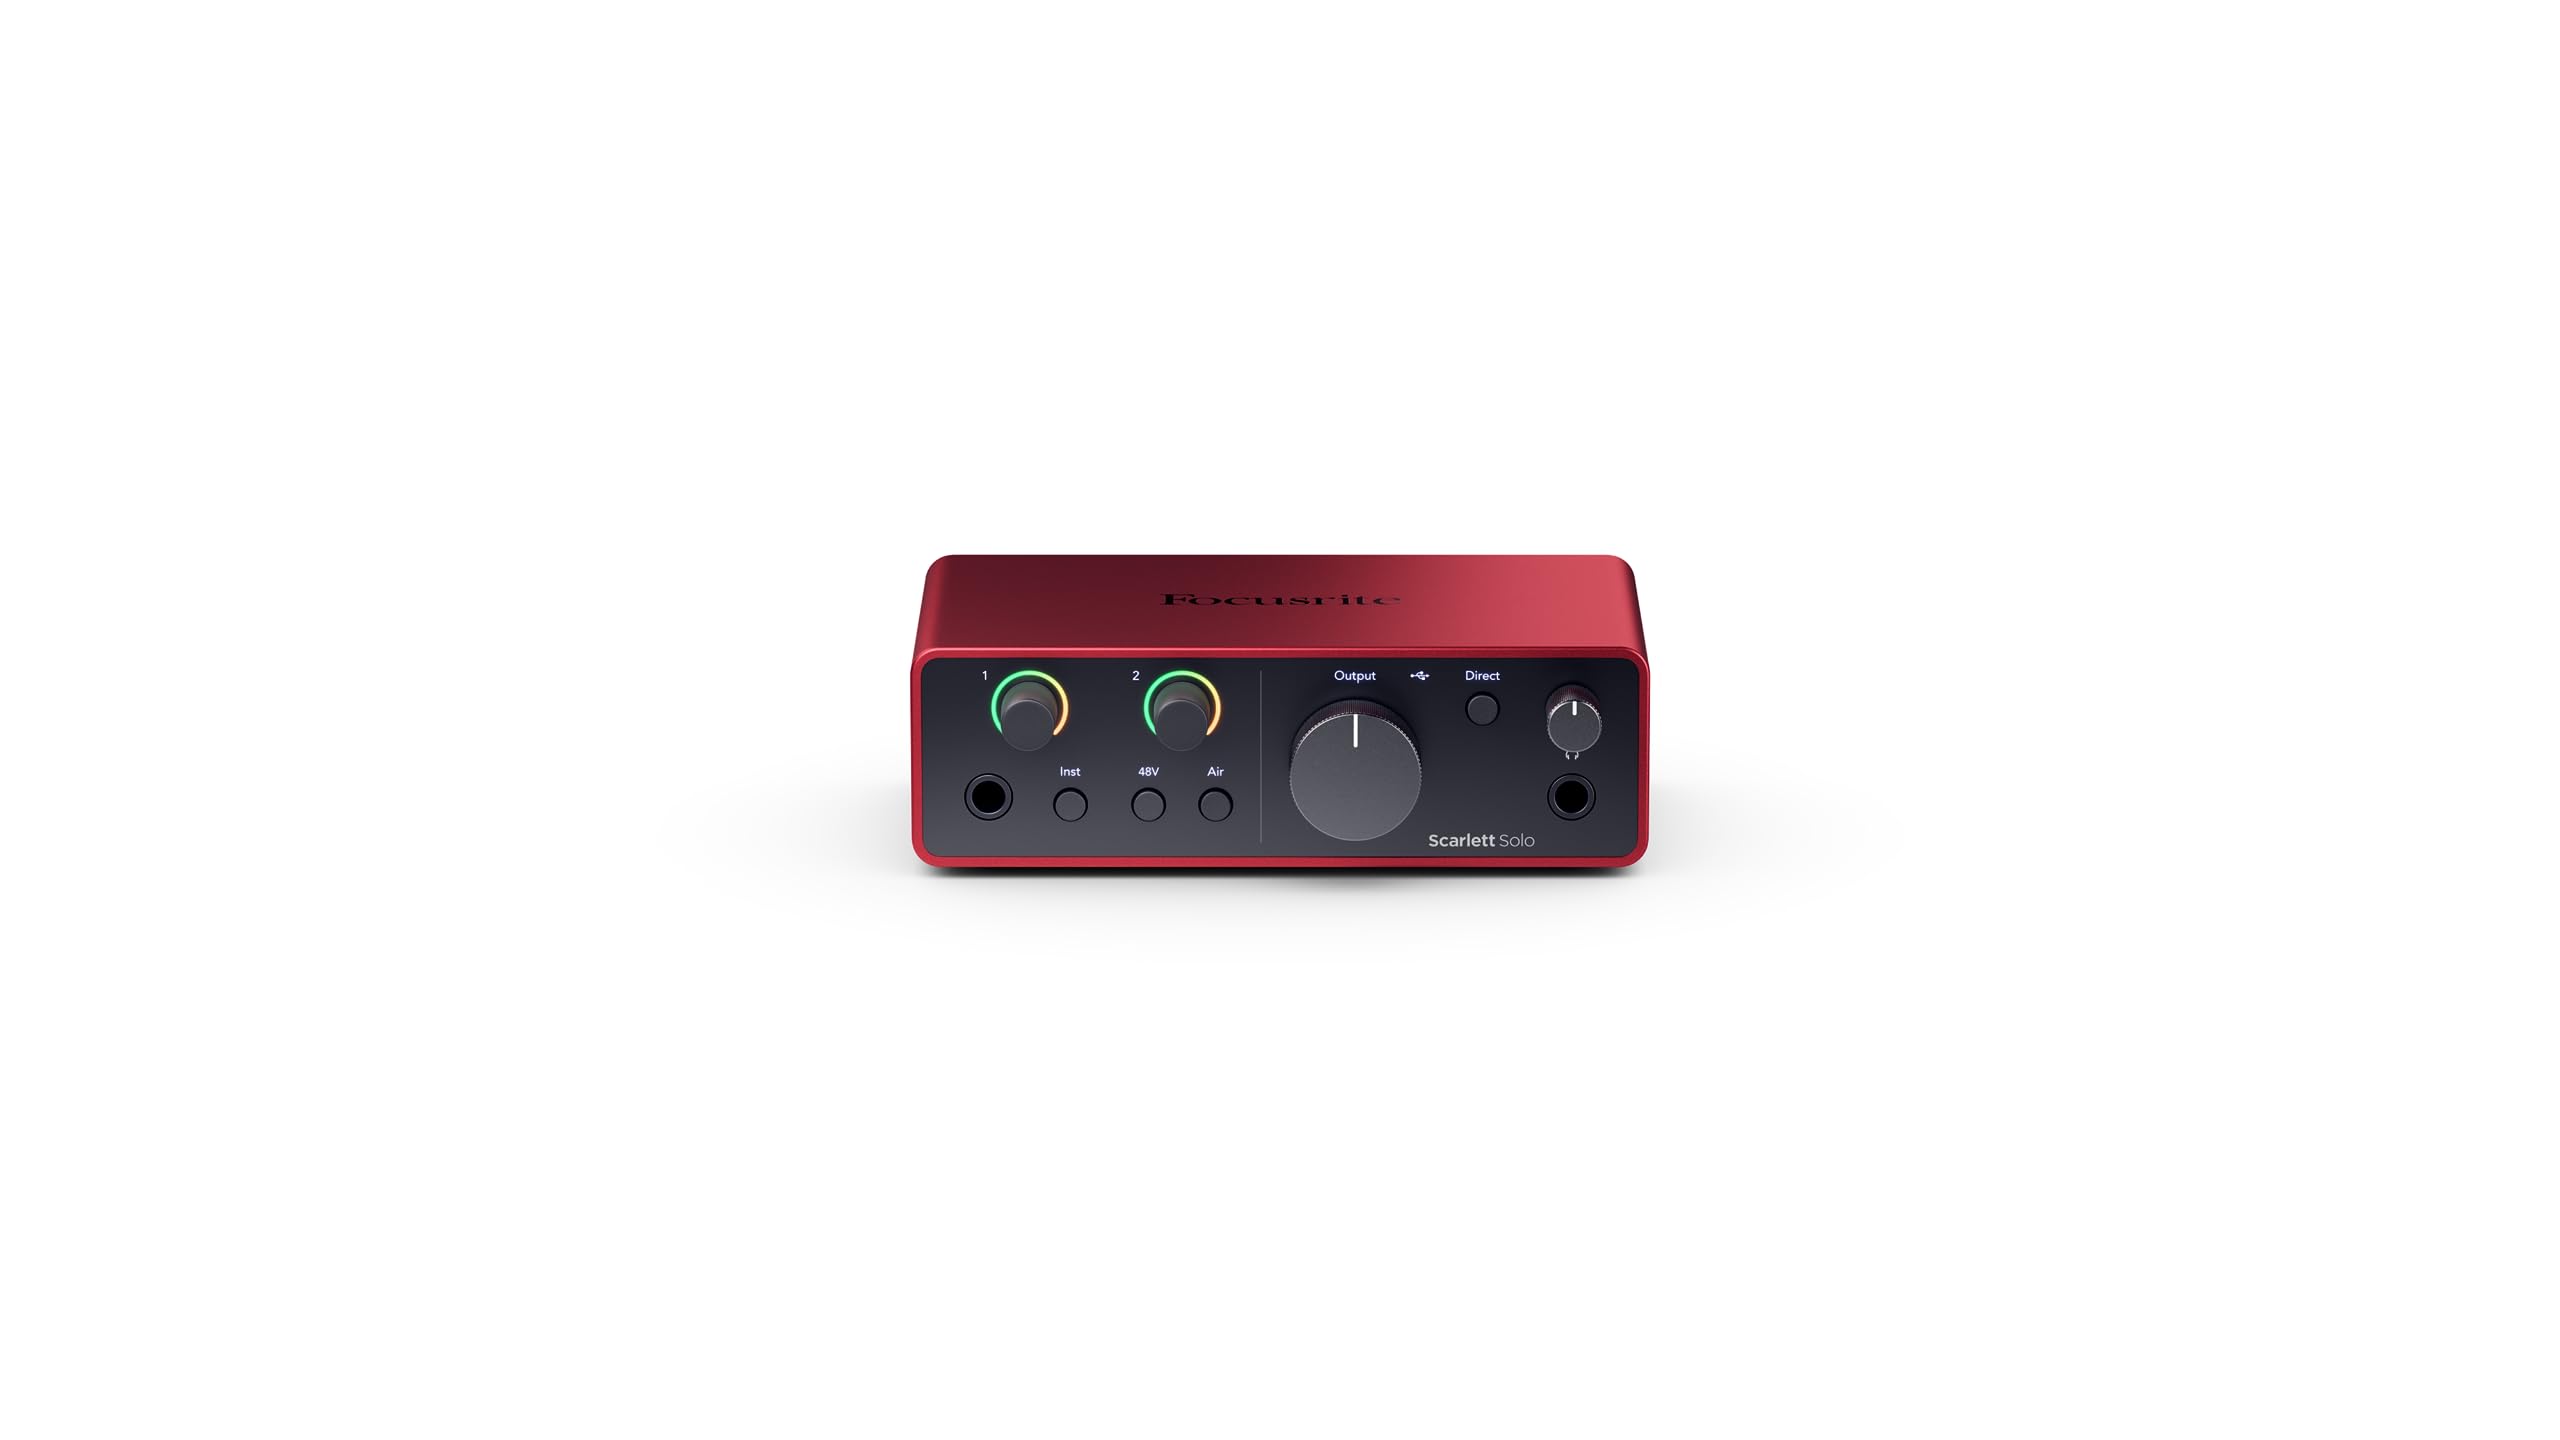 Achat Focusrite Scarlett Solo 4th Gen, interface audio USB pour la guitare, les voix et la production — des prises de son de très haute qualité et tous les logiciels pour enregistrer vTmiVPIgN bien vendre